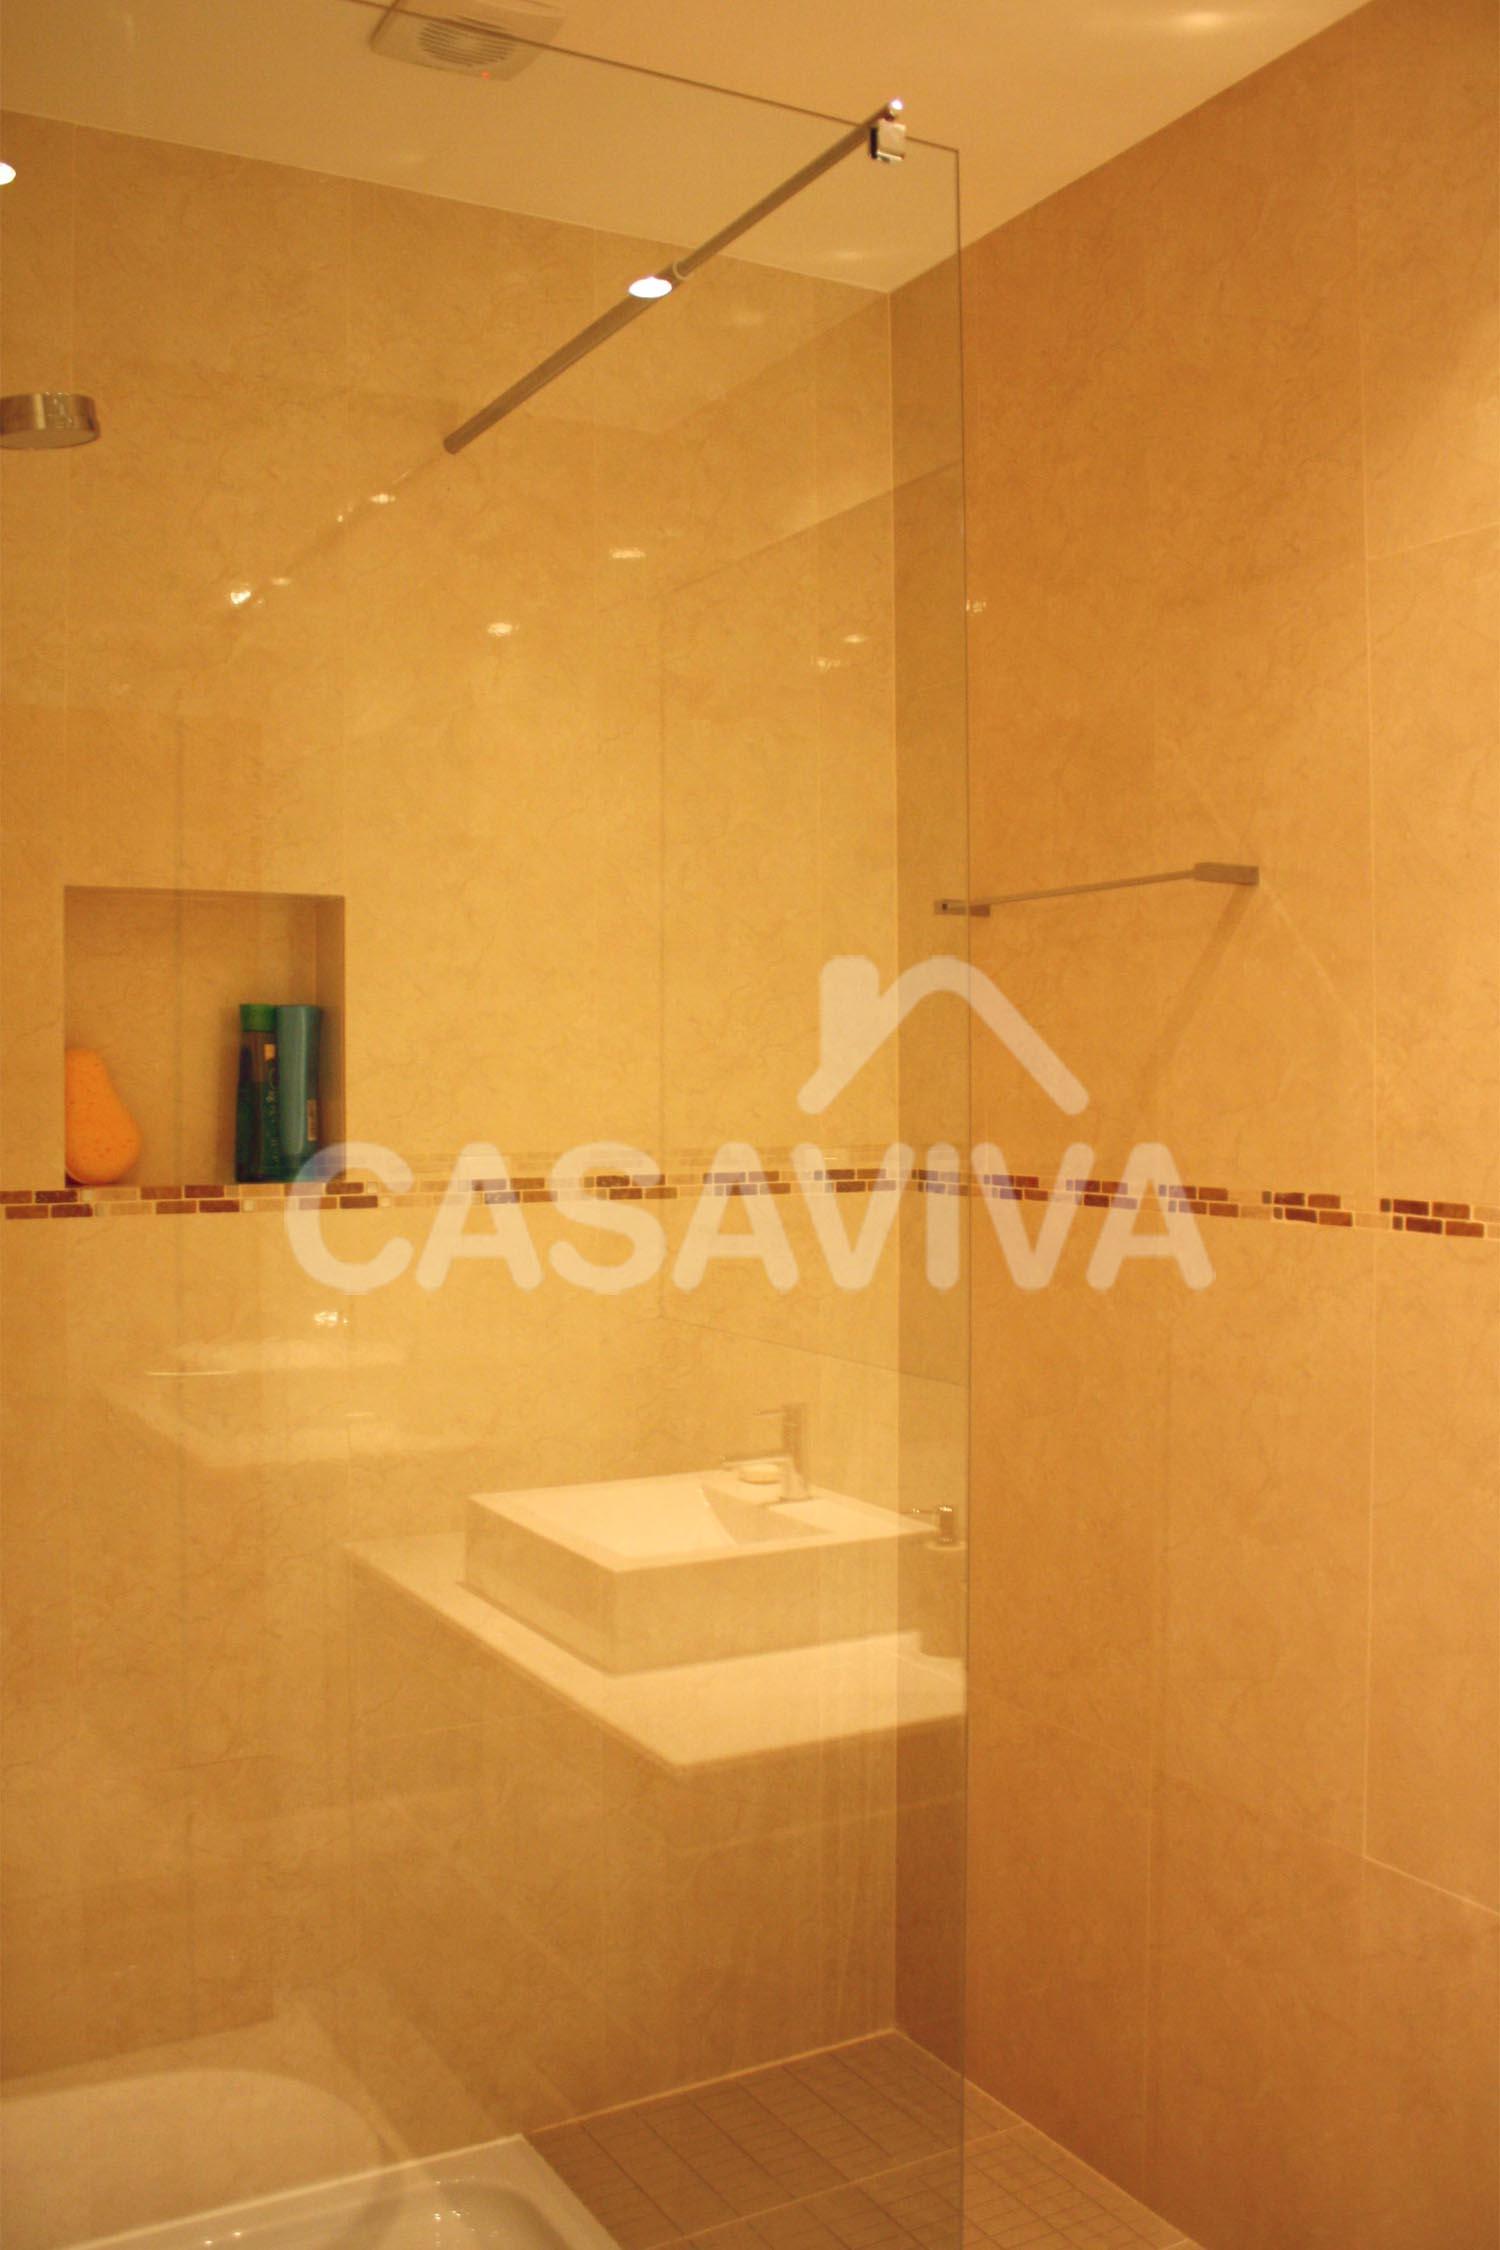 Revestimiento de paredes en azulejo cermico. Plato de ducha con mampara fija en vidrio templado.